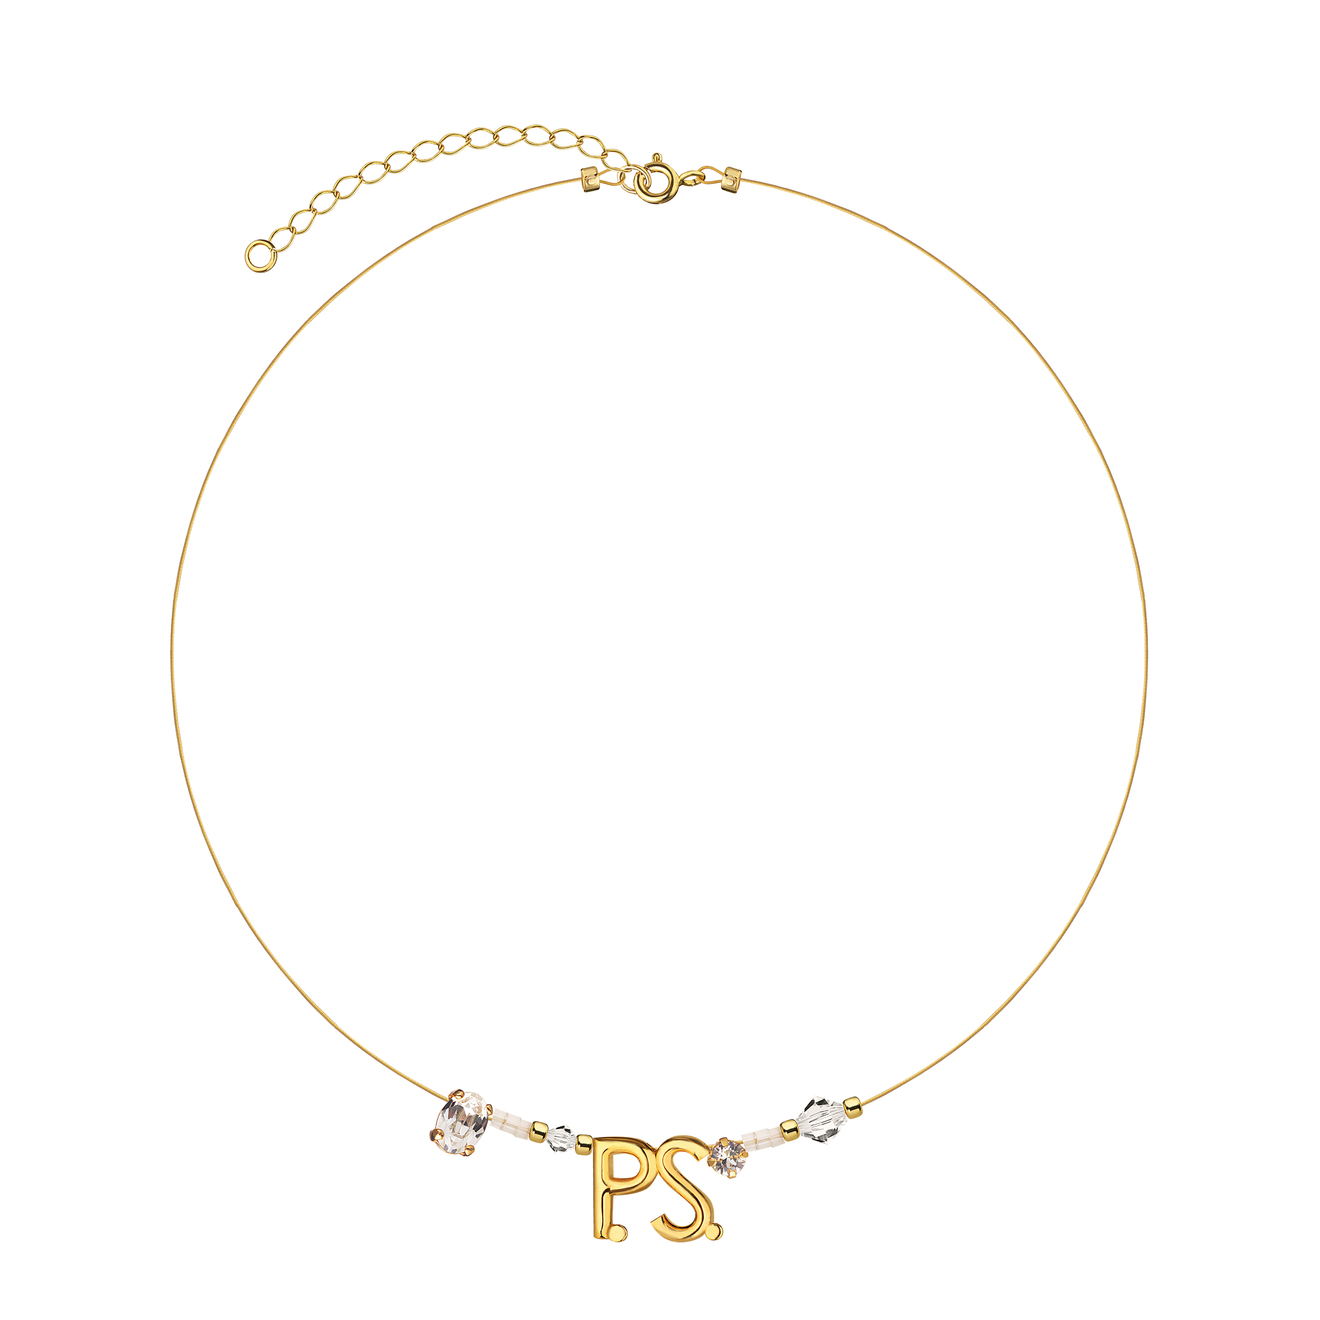 Phenomenal Studio Позолоченный чокер с фирменным логотипом и кристаллами P.S. Mini Gold Necklace